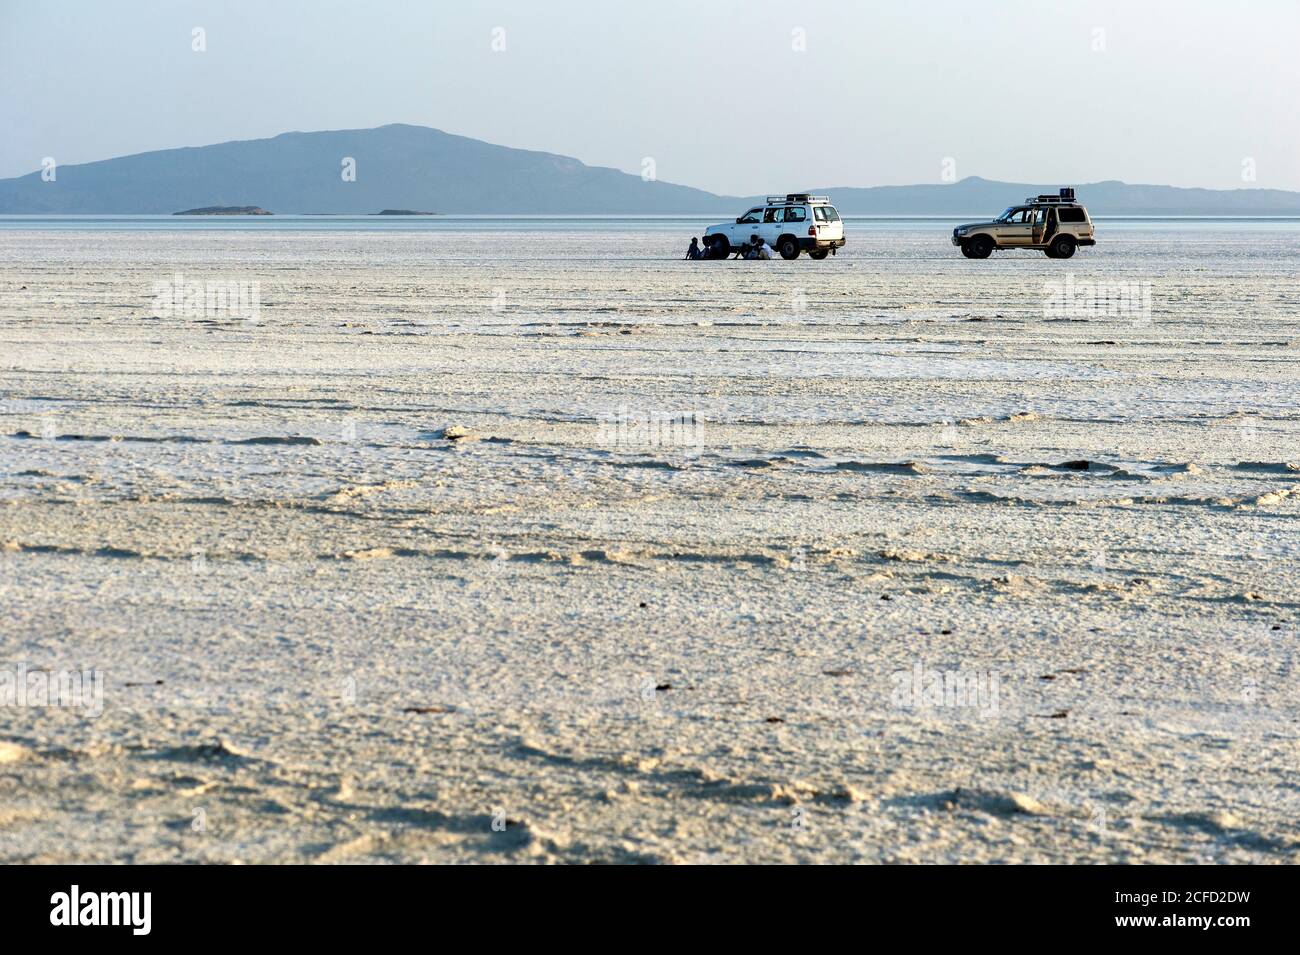 Offroad-Fahrzeuge, die sich auf der Salzkruste des Assale Salt Lake über 100 m unter dem Meeresspiegel, Danakil-Depression, Afar Triangle, Äthiopien verloren sehen Stockfoto